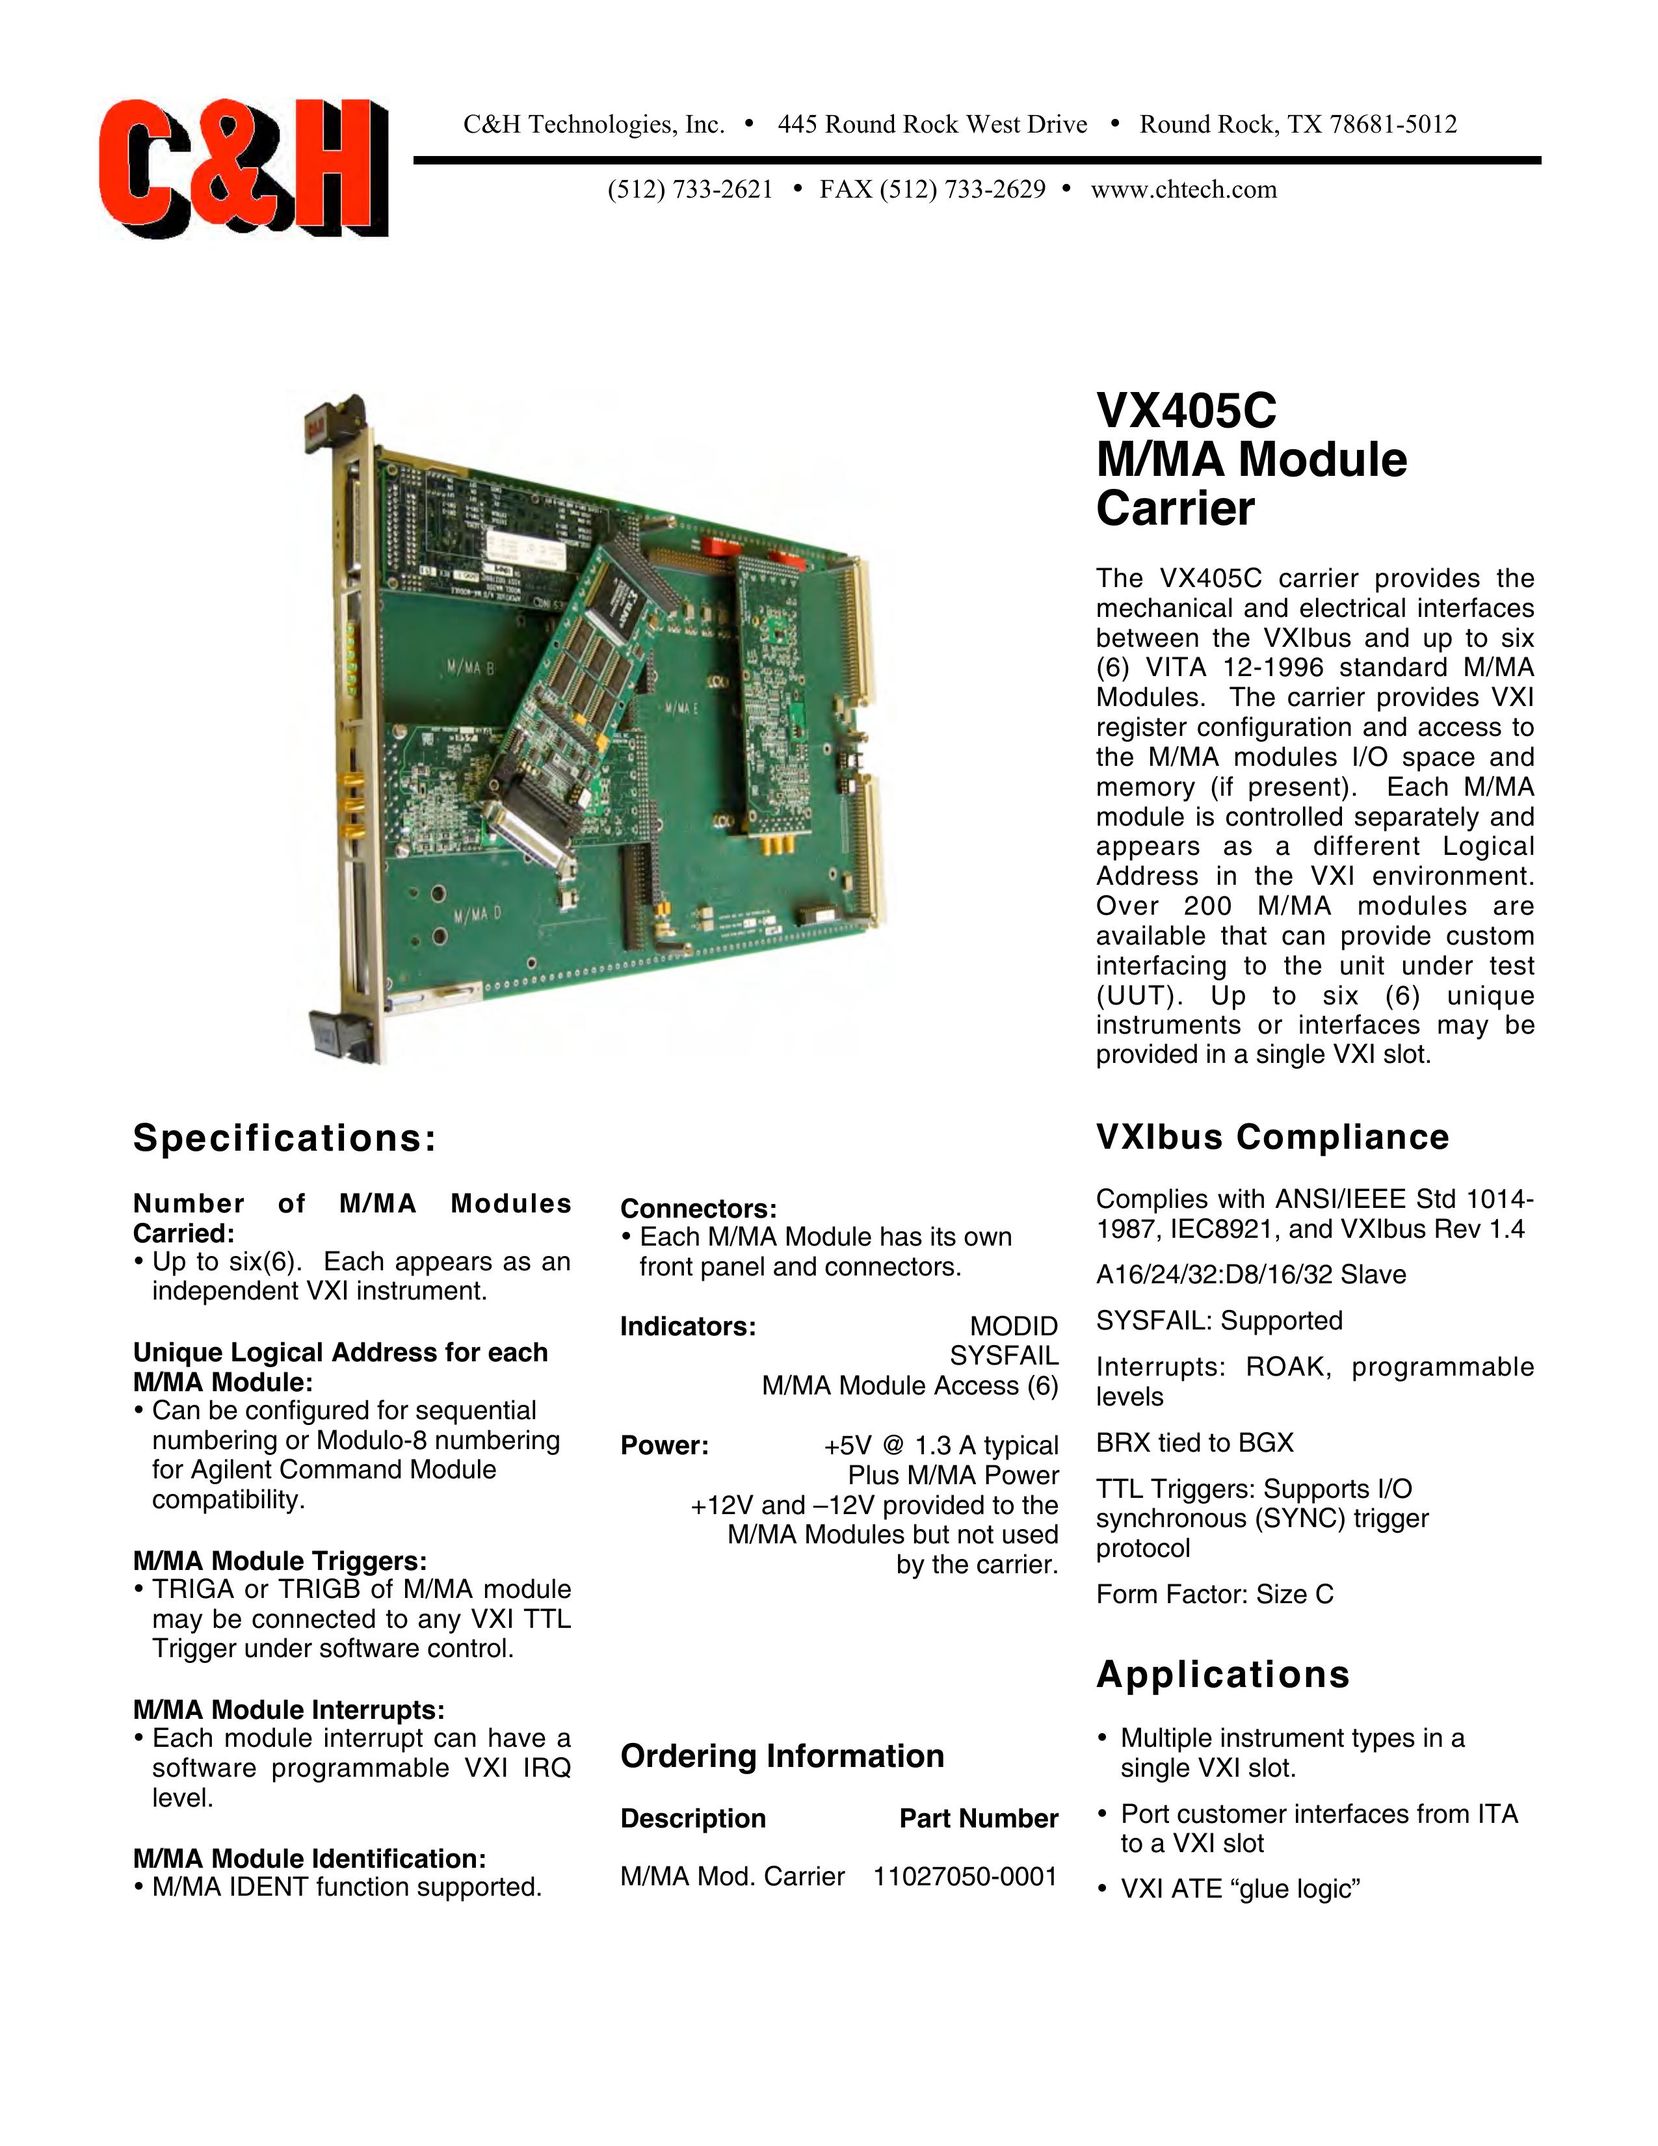 CH Tech VX405C Network Card User Manual